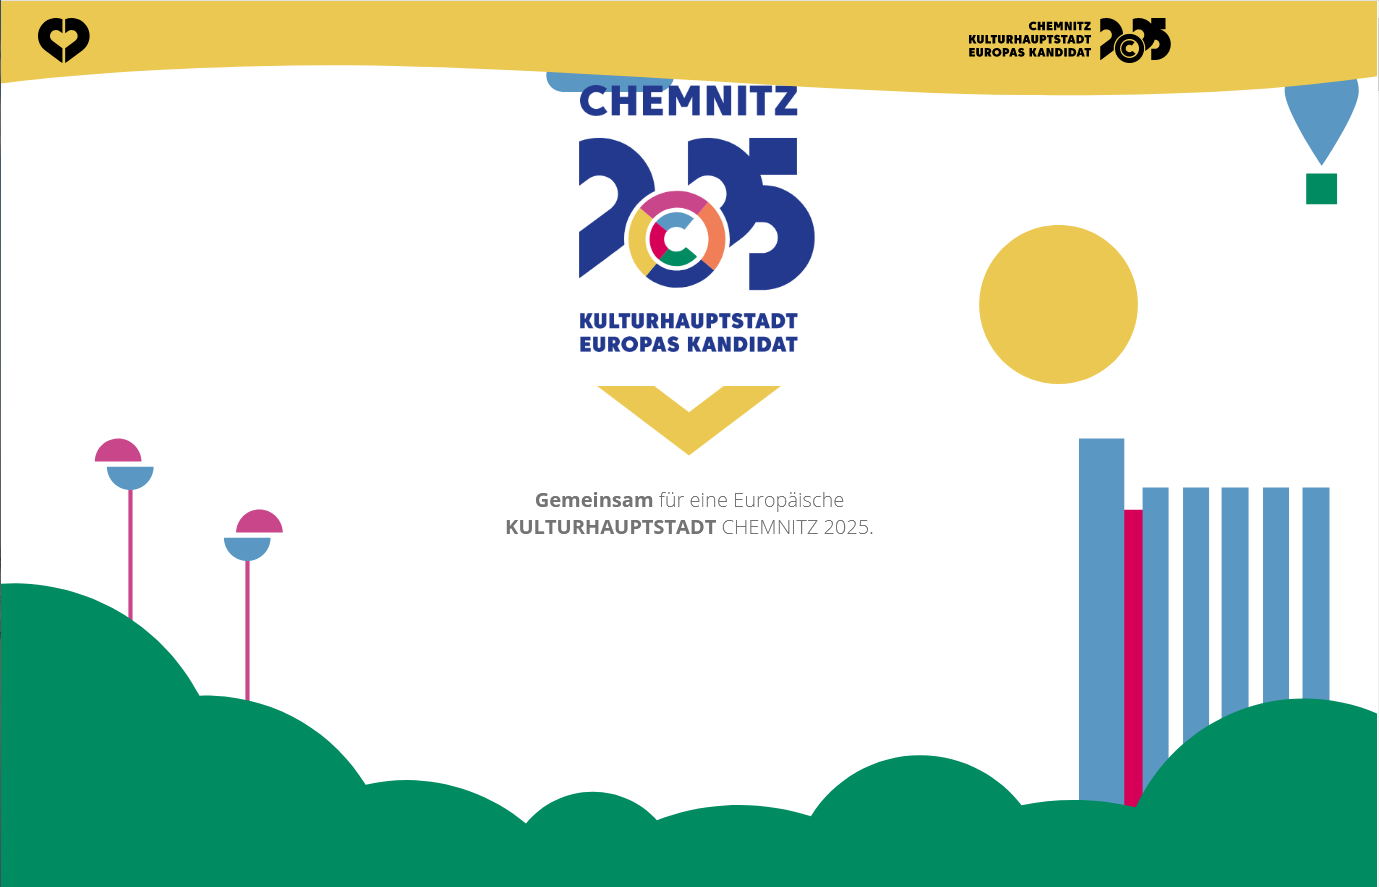 Wir unterstützen Chemnitz 2025 - Ihr auch?